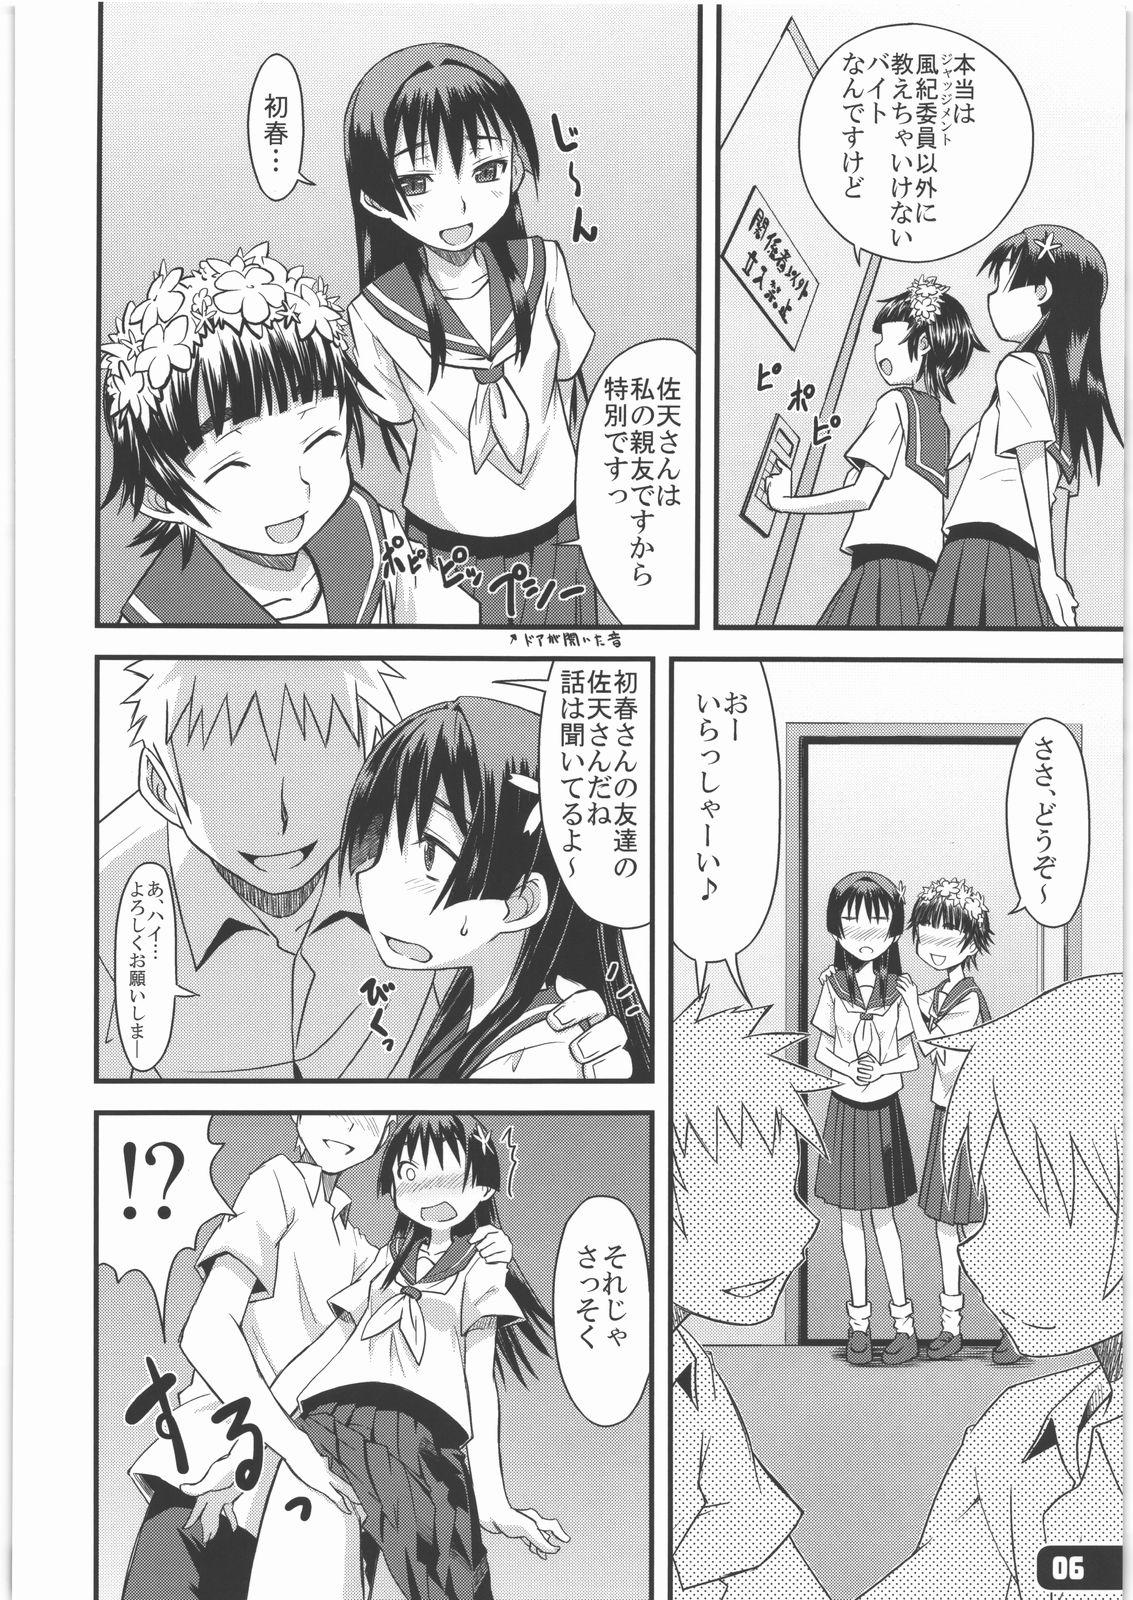 Titties Flower Girls - Toaru kagaku no railgun Perrito - Page 5